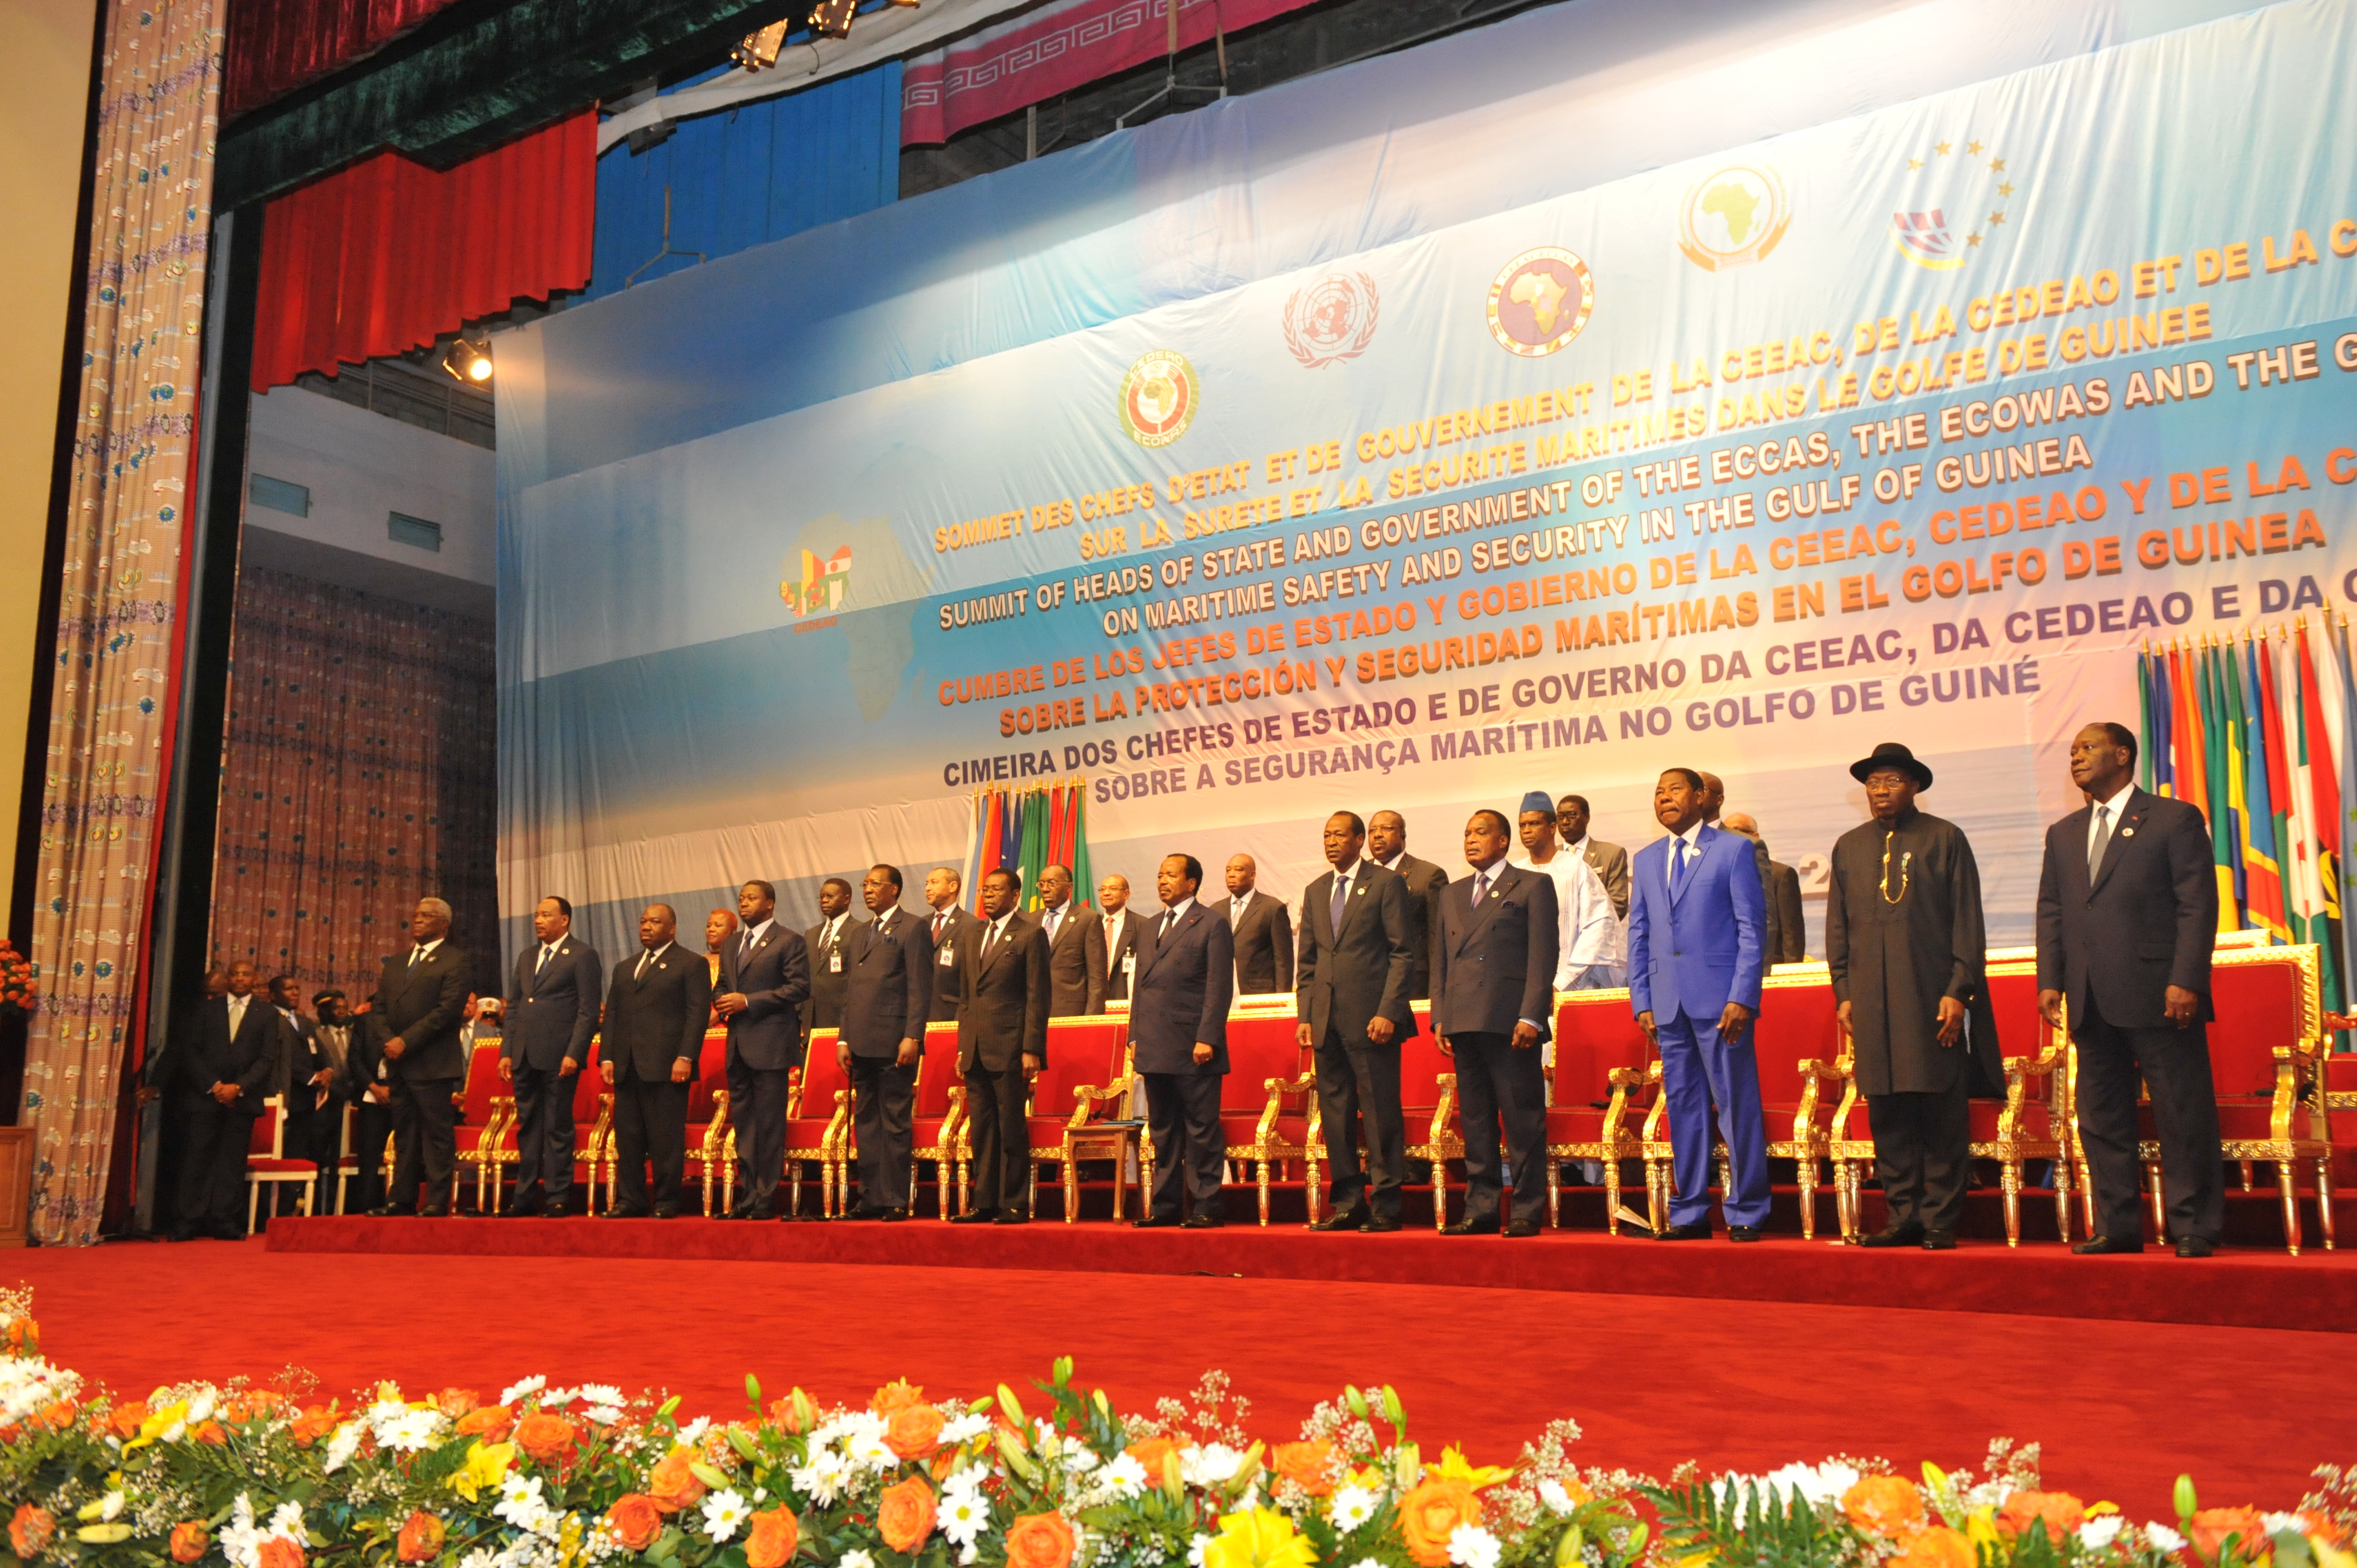 Cérémonies d'ouverture du Sommet des Chefs d'Etat et de Gouvernement de la CEEAC, de la CEDEAO et de la CGG